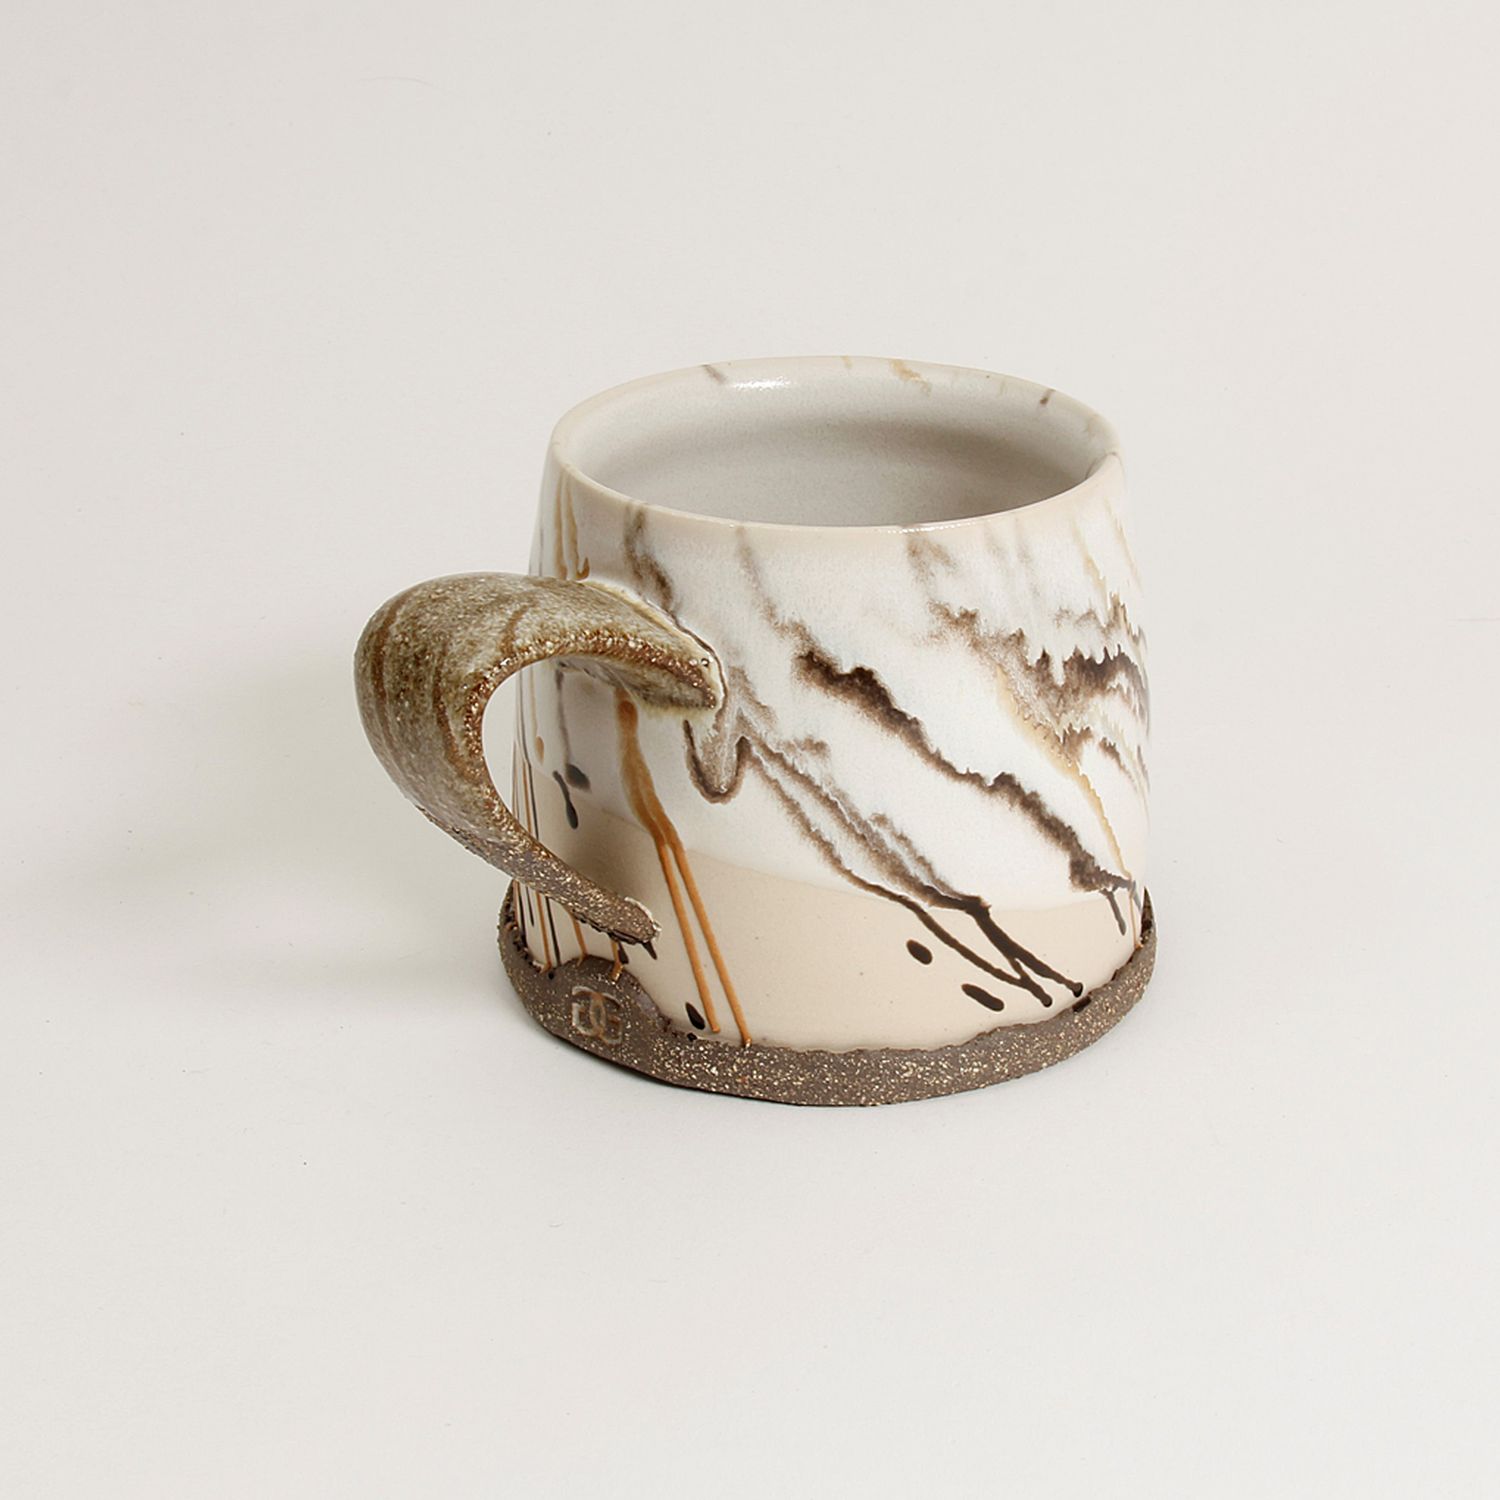 Gracia Isabel Gomez: “Cafe con Leche” White Chocolate Mug Product Image 7 of 7